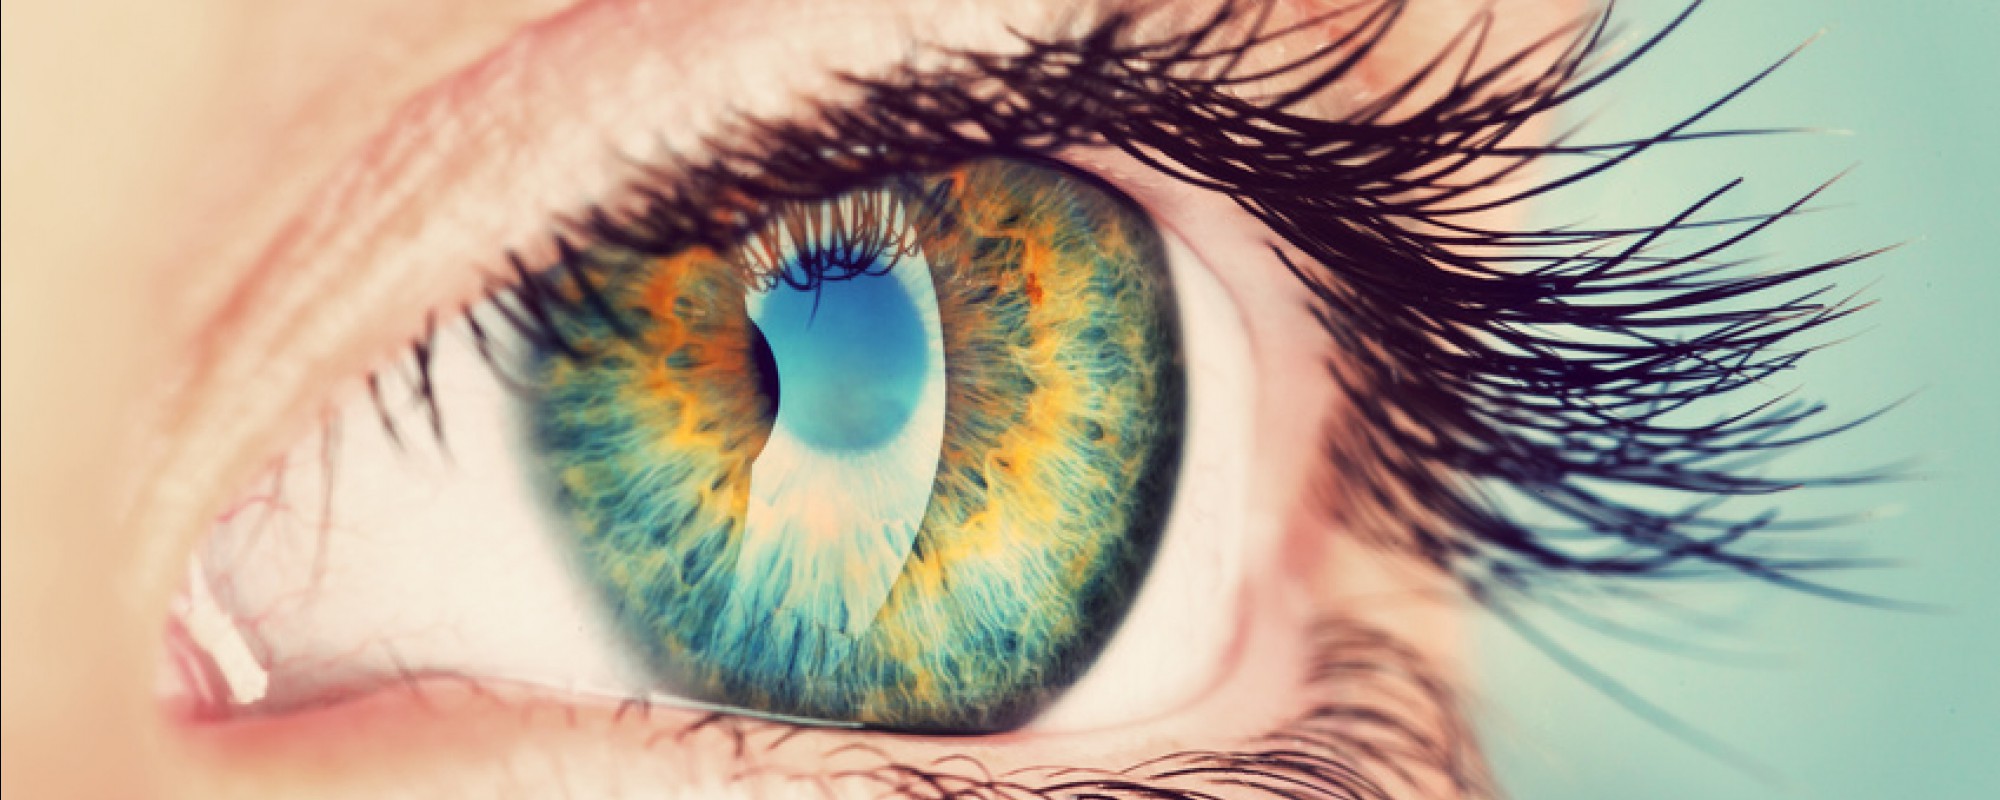 dépistage pathologies oculaires